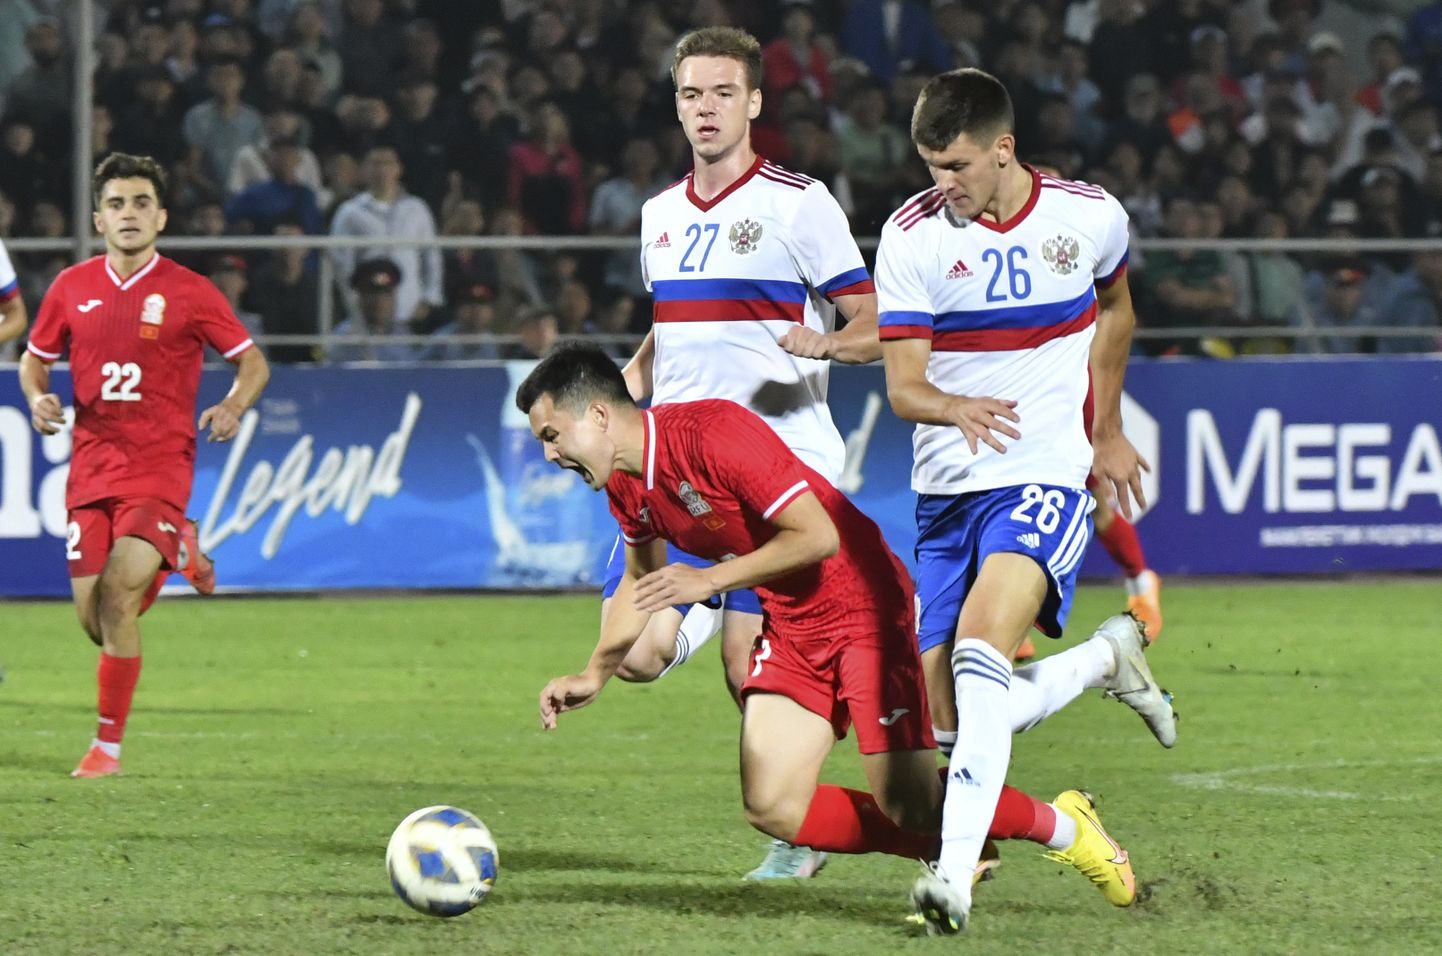 Venemaa jalgpallikoondis (valgetes vormides) viib end Aasia tasemega juba kurssi. 24. septembril ehk täpselt seitse kuud pärast sõja algust mängiti Biškekis Kõrgõzstaniga ja võideti 2:1.